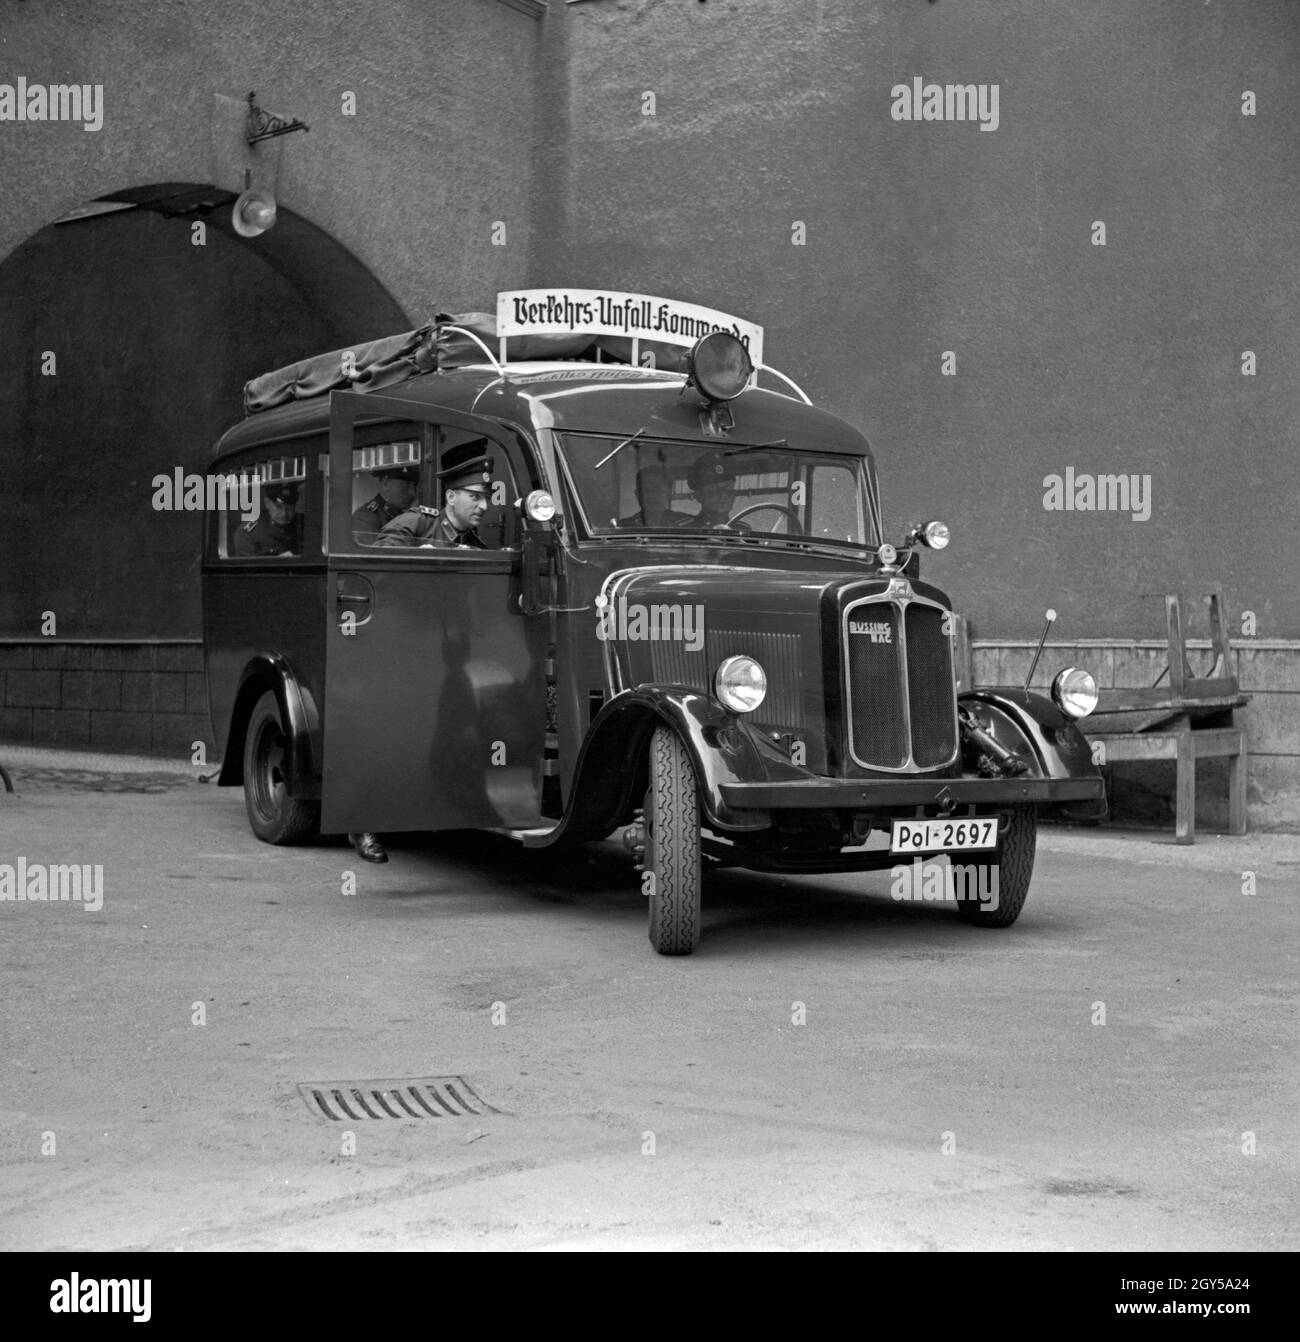 Der Einsatzwagen des Verkehrsunfallkommandos, ein Kleinbus des Fabrikats Büssing NAG, Deutschland, 1930er Jahre. The police car of the Verkehrsunfallkommando, a small bus of the company Buessing NAG, Germany 1930s. Stock Photo